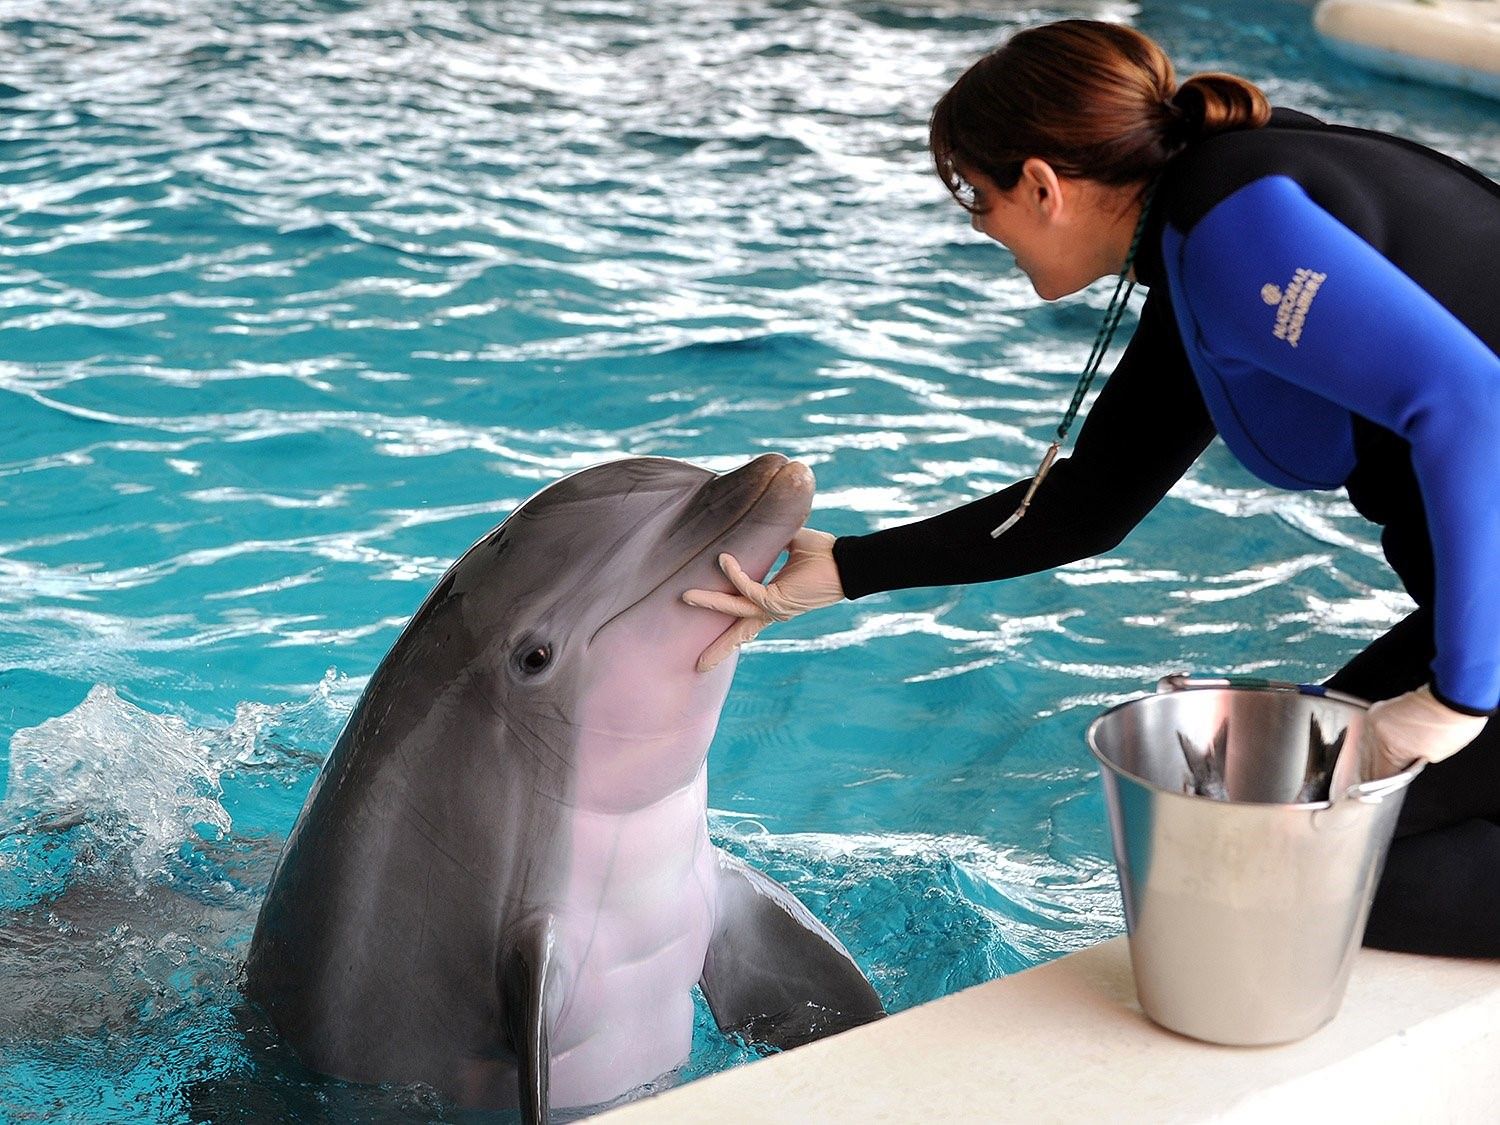 Английский про дельфинов. Черноморская Афалина дрессировка. Дельфин Афалина с человеком. Дельфин Афалина и рыбы. Дельфины и люди.